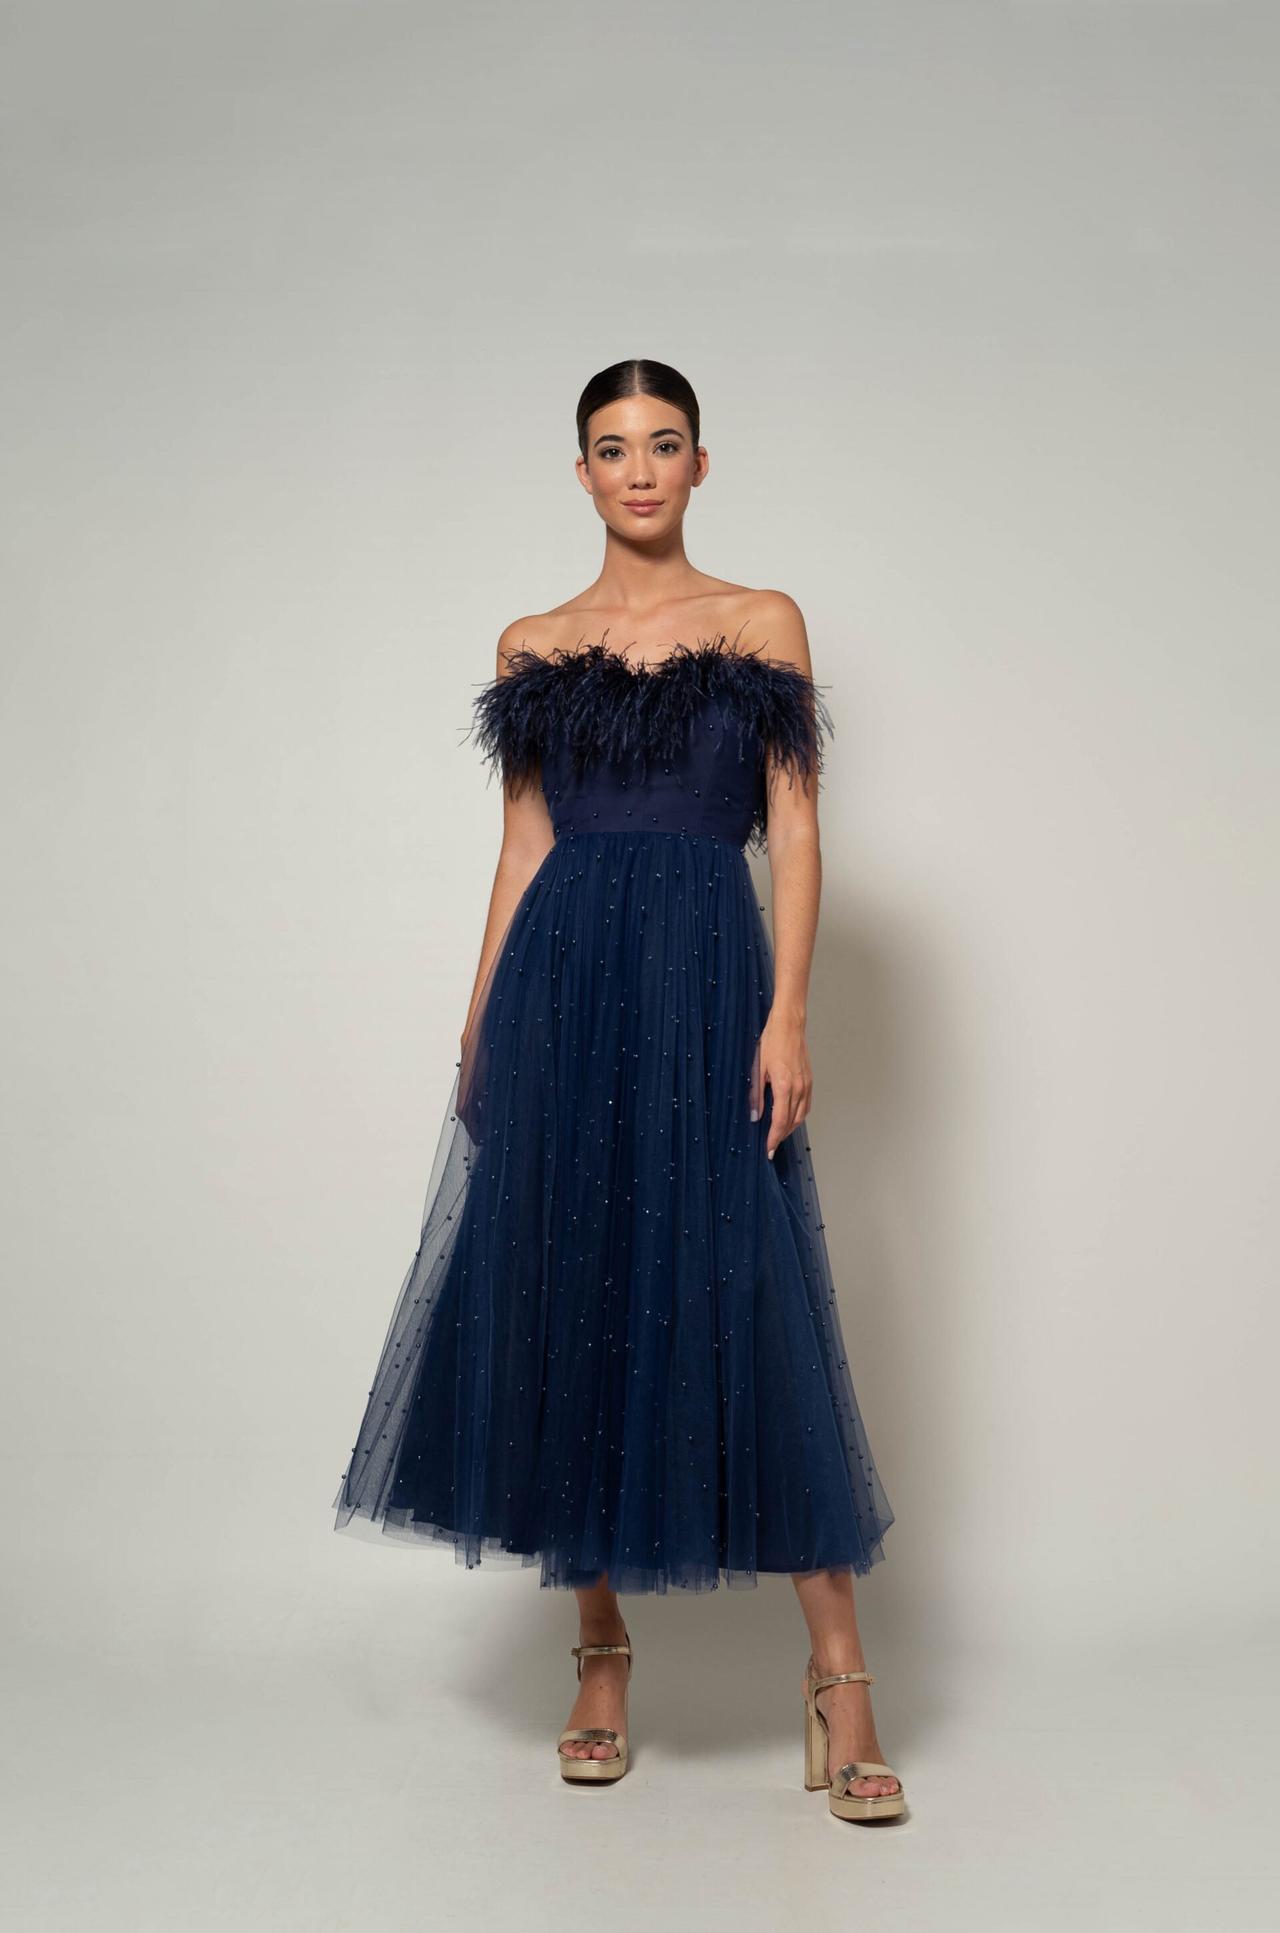 valor El uno al otro Decir Vestidos de fiesta azules: 50 propuestas para un look elegante